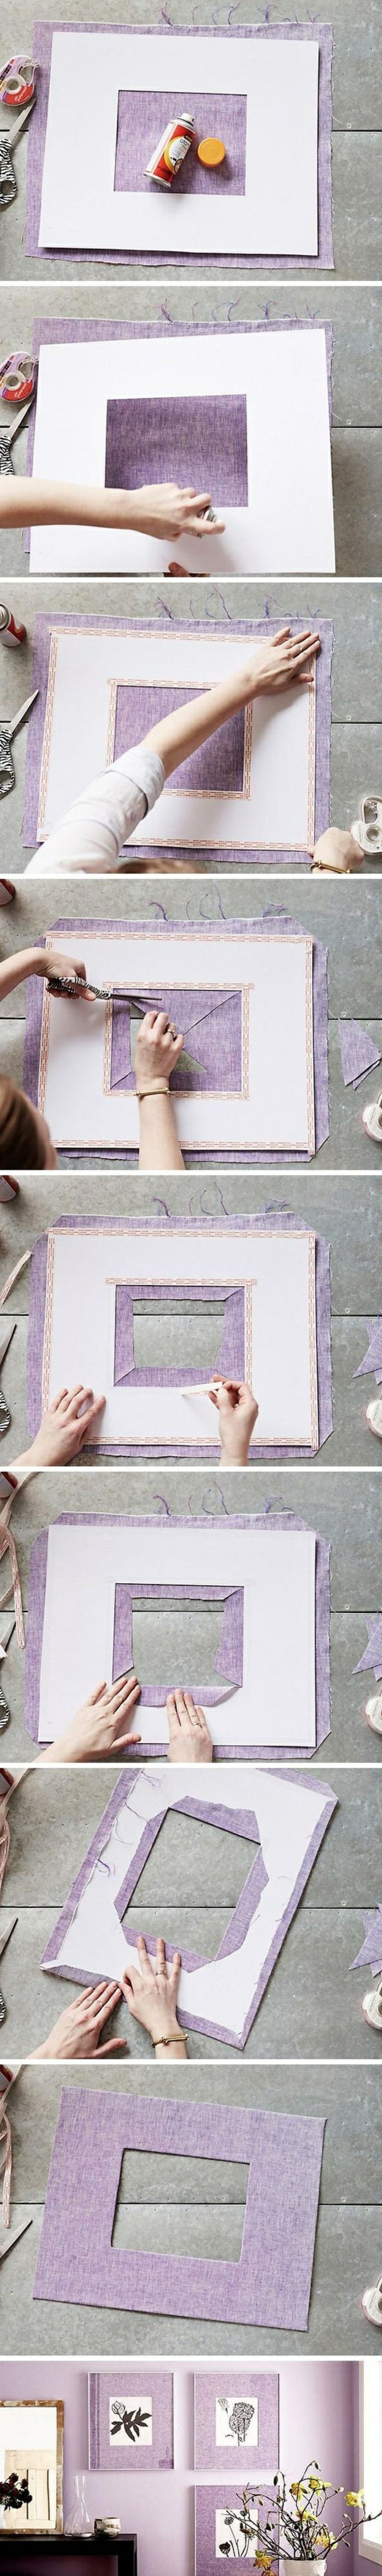 Fotoram gjord av lila papper, foton, fotovägg